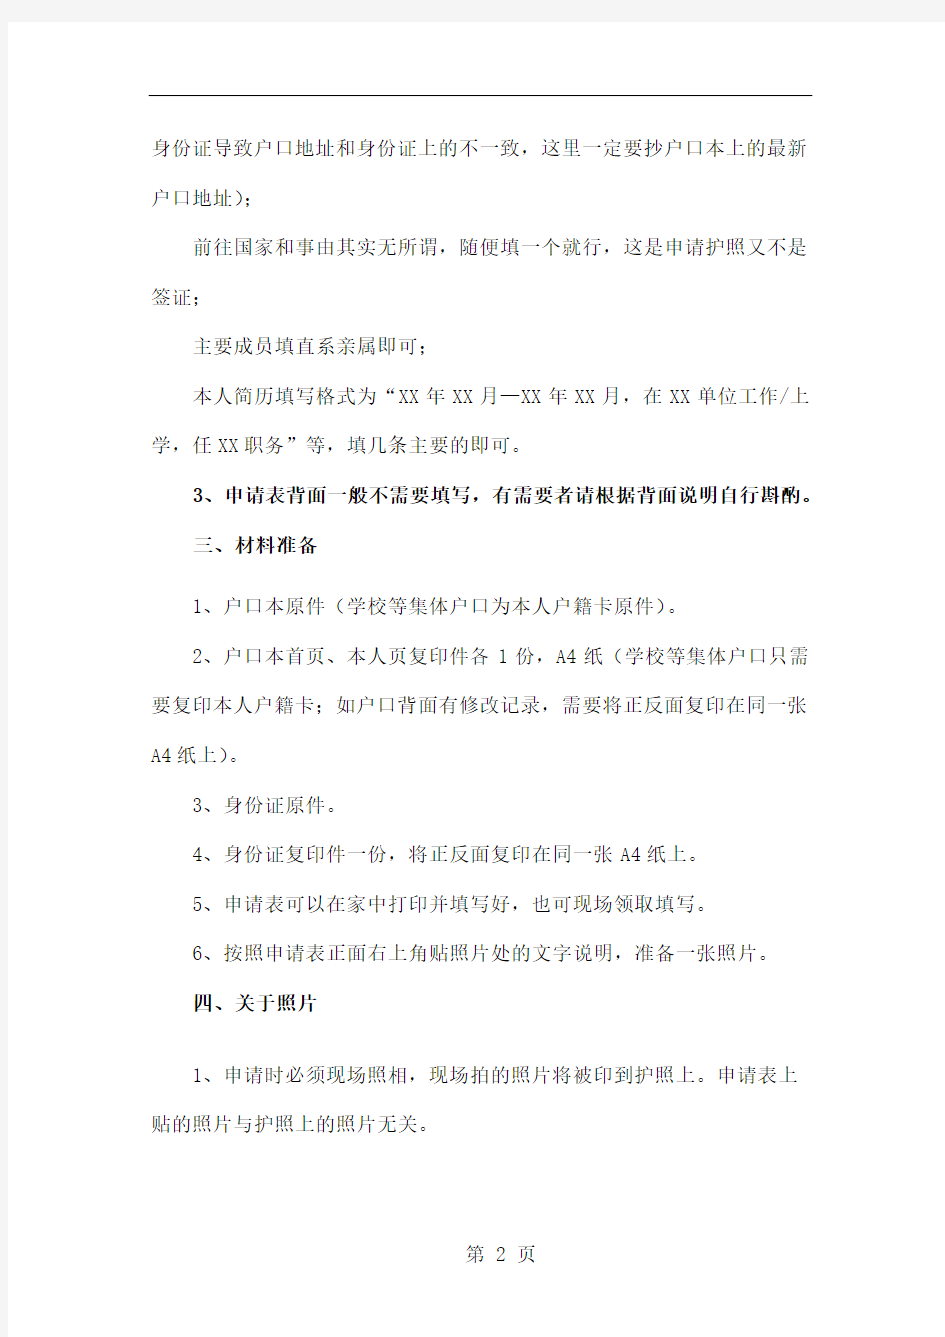 北京市护照办理流程及攻略(以海淀区办理因私护照为例)共13页文档